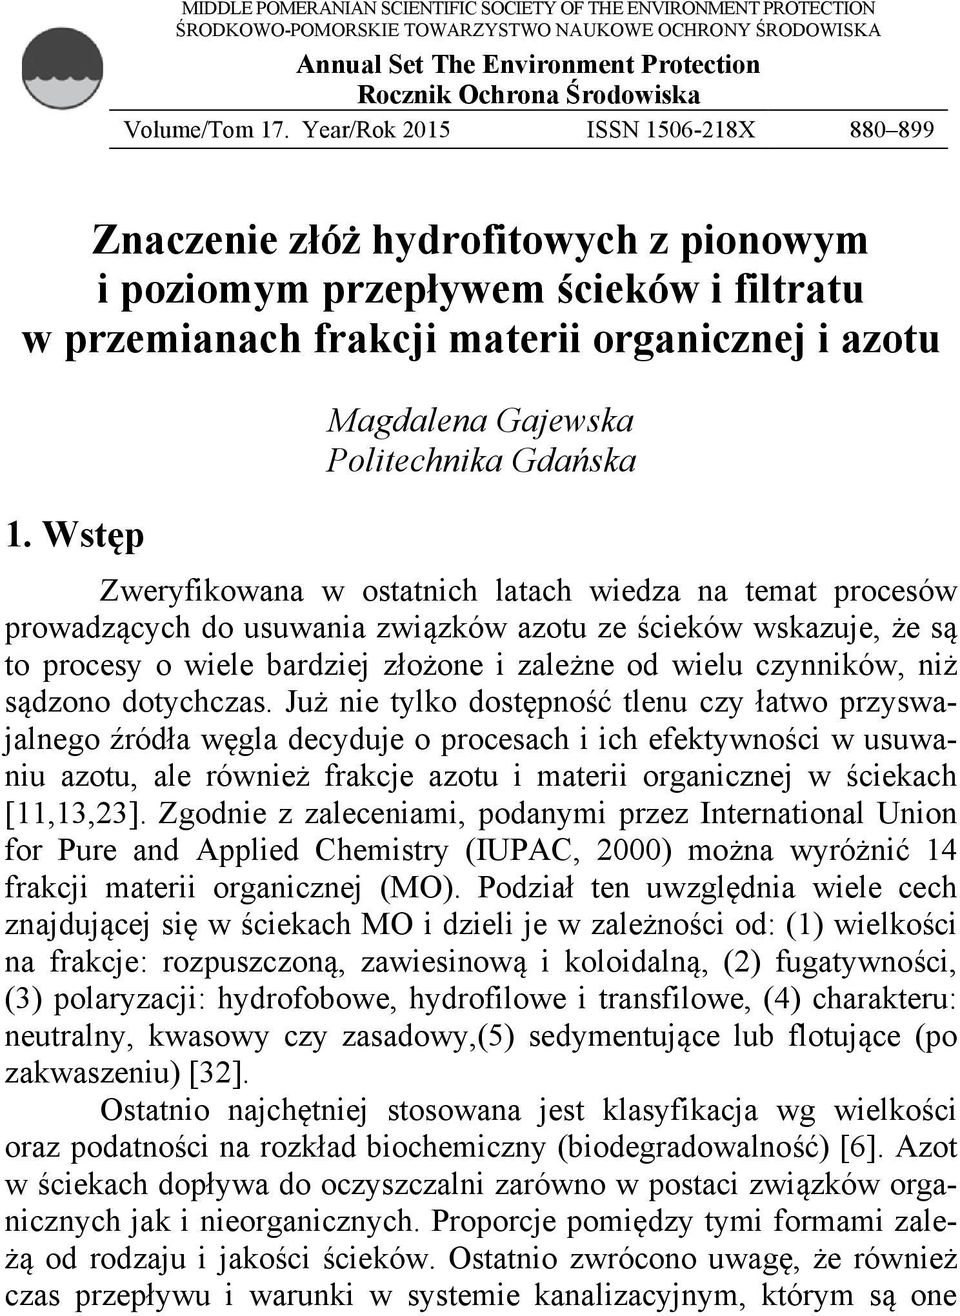 Wstęp Magdalena Gajewska Politechnika Gdańska Zweryfikowana w ostatnich latach wiedza na temat procesów prowadzących do usuwania związków azotu ze ścieków wskazuje, że są to procesy o wiele bardziej